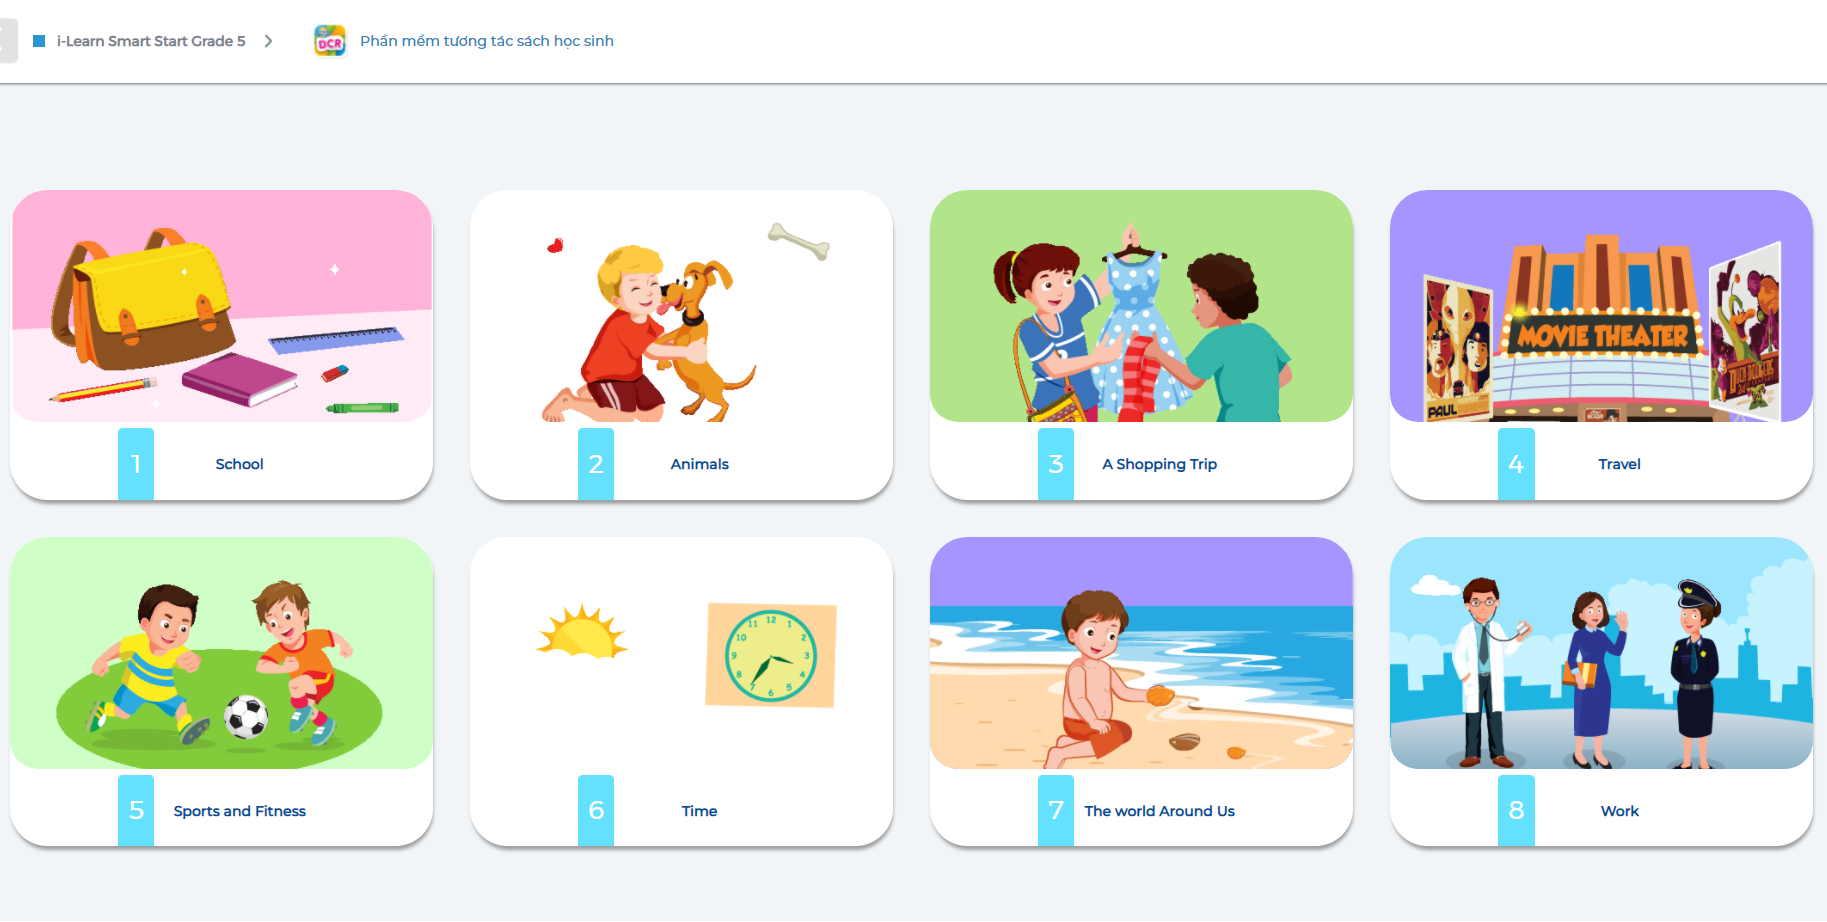 Hình ảnh [APP] i-Learn Smart Start Grade 5 - Ứng dụng phần mềm tương tác sách học sinh